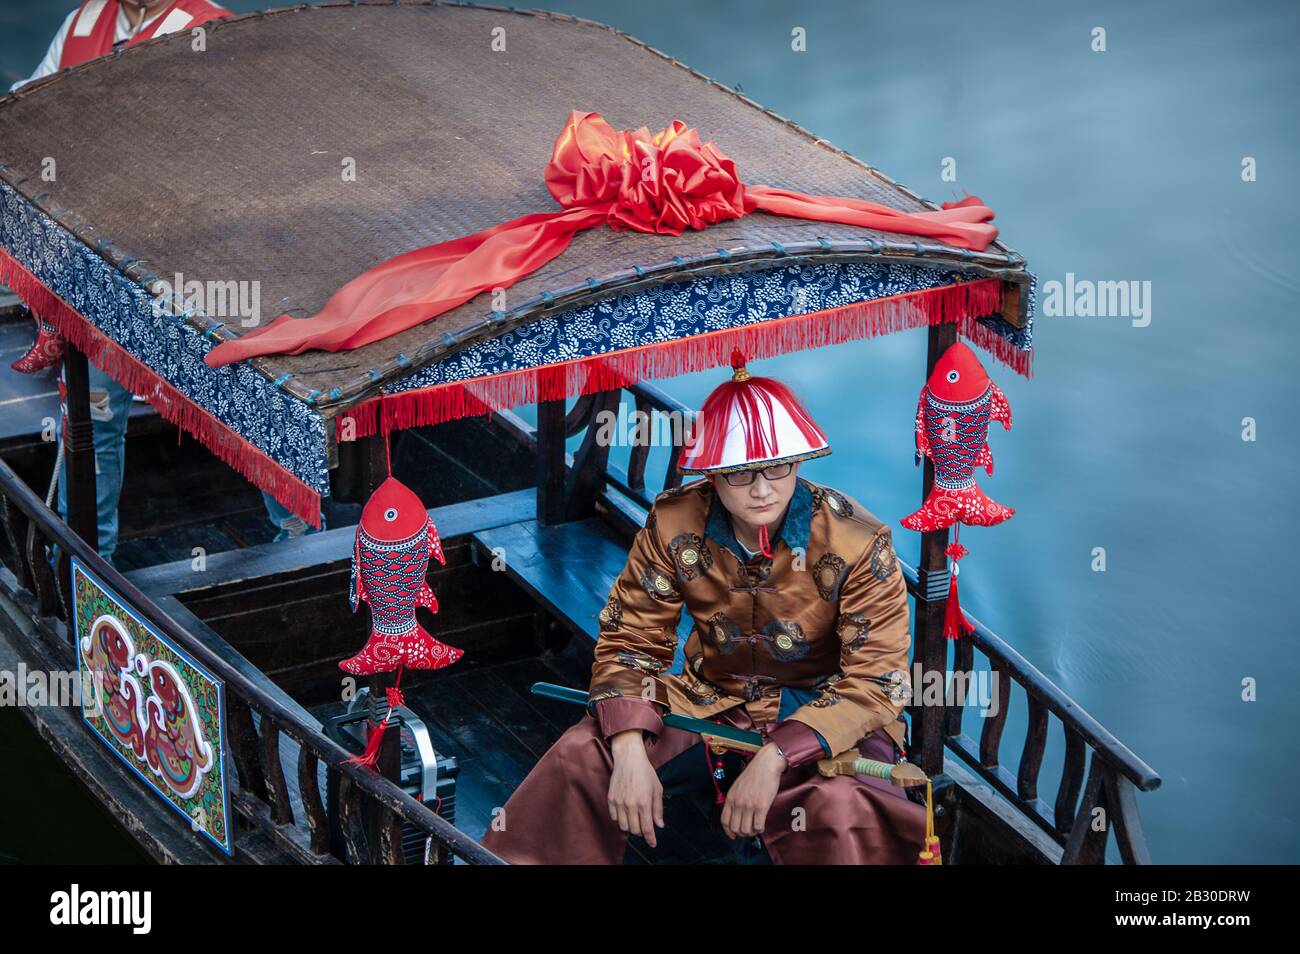 Wuxi, Chine - octobre 2019: Homme vêtu d'un costume chinois traditionnel sur une barge de rivière décorée, sur fond bleu. Banque D'Images